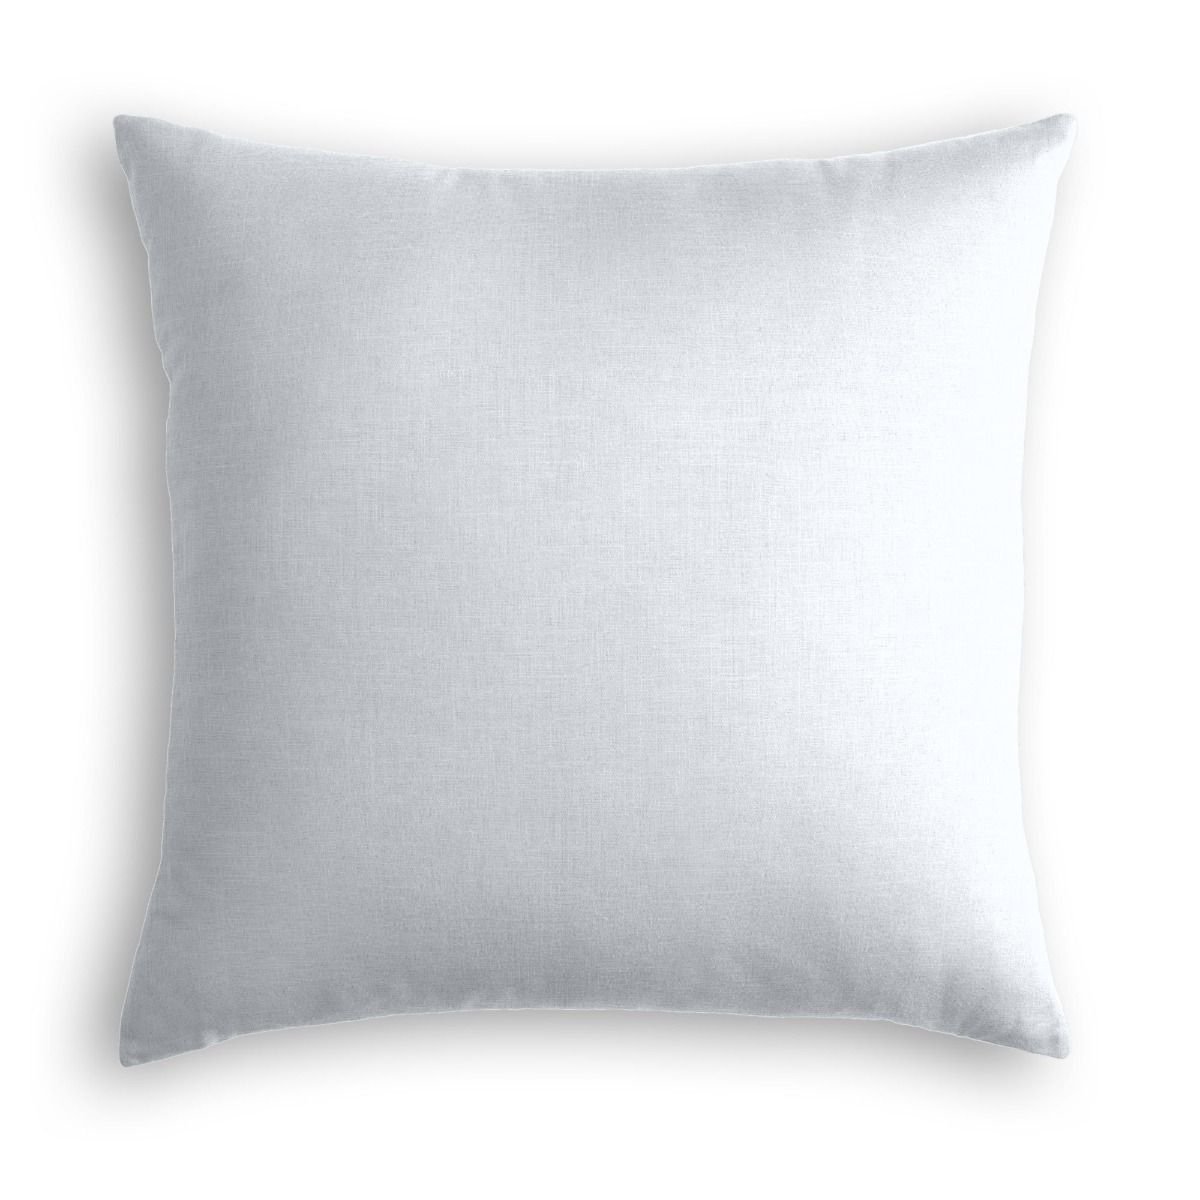 Classic Linen Pillow, Pale Blue, 20" x 20" - Image 0